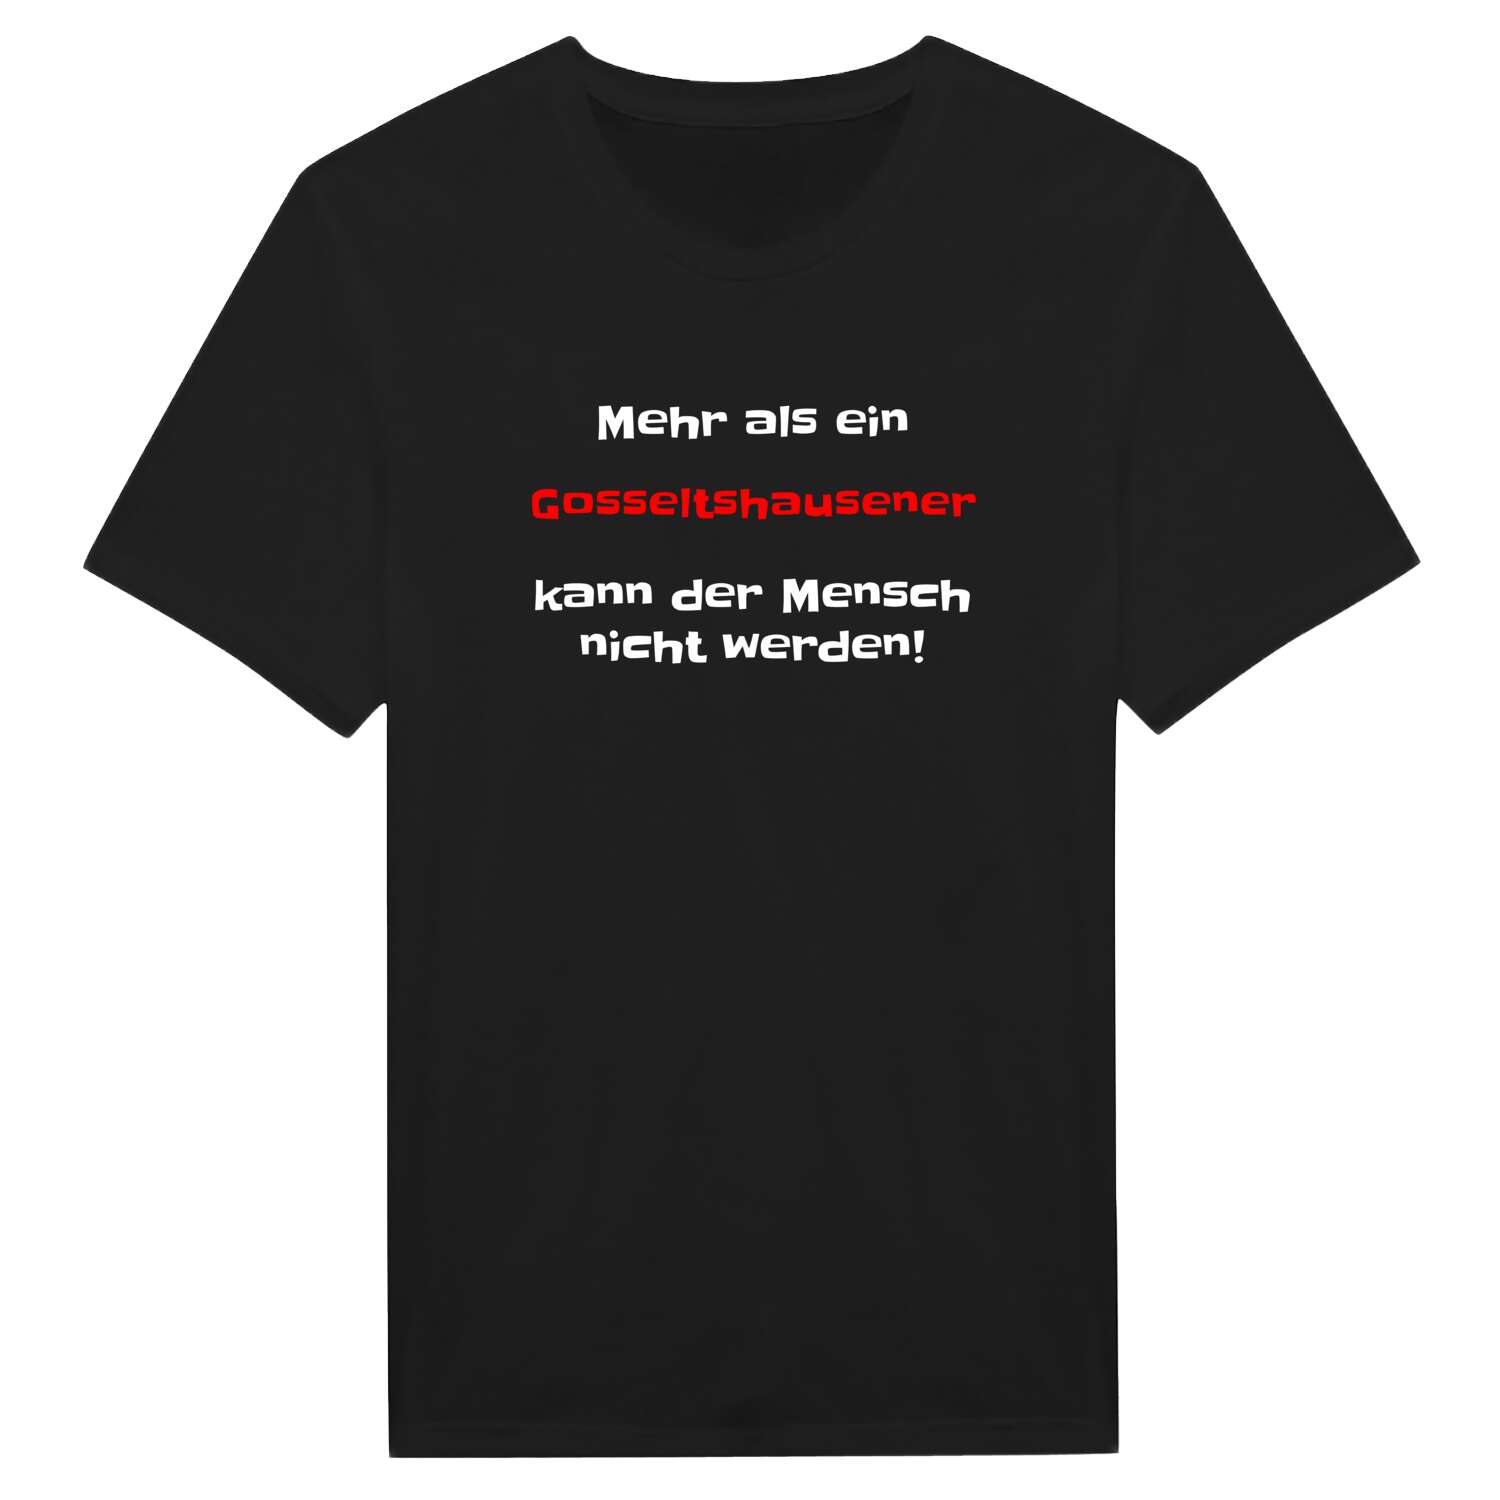 Gosseltshausen T-Shirt »Mehr als ein«